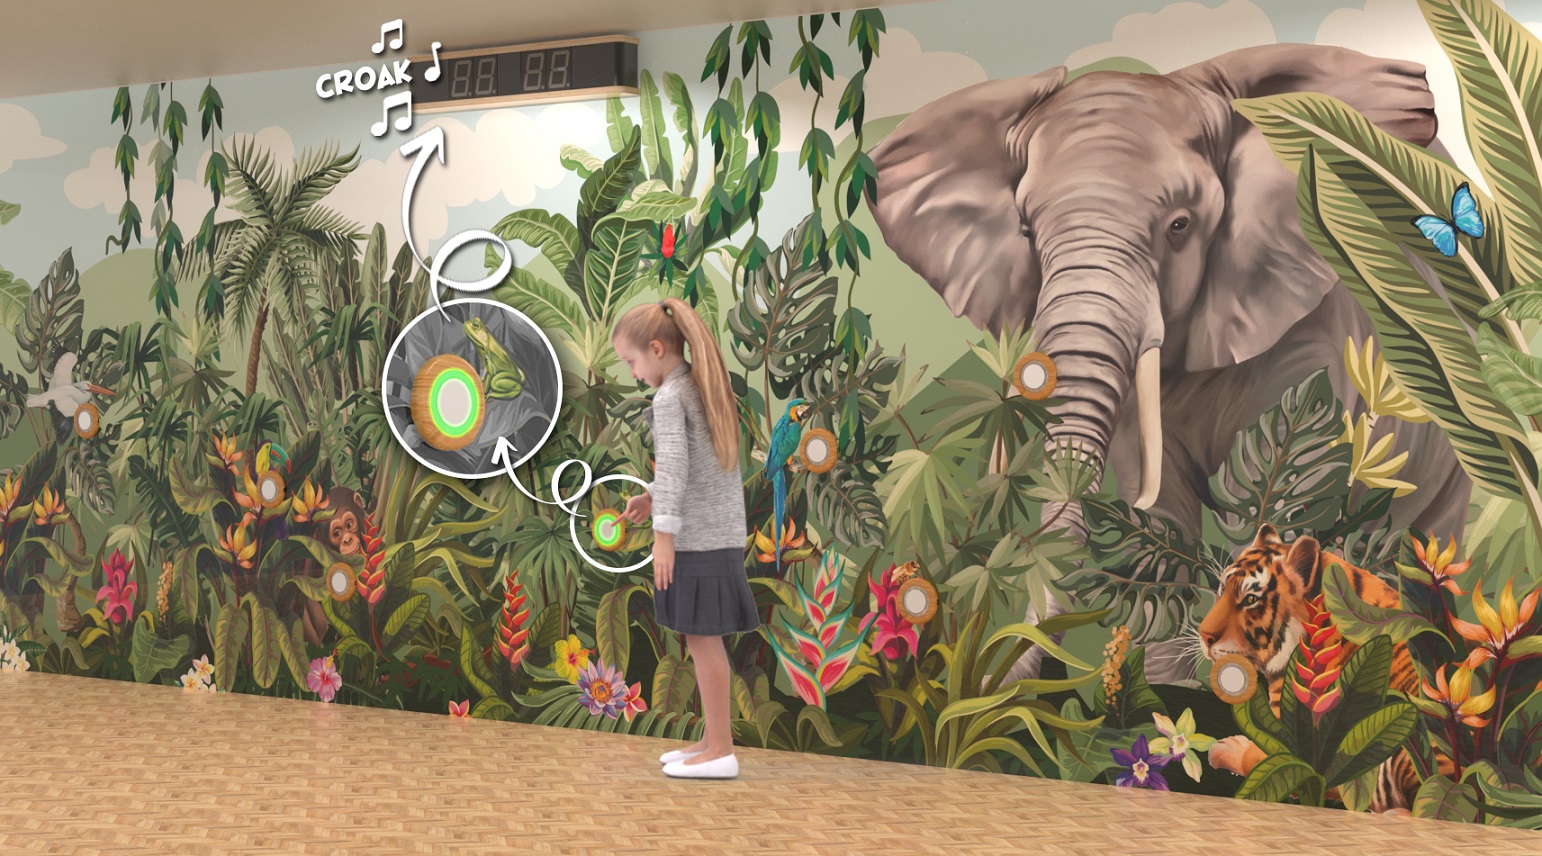 expierence wall voor kinderen met olifant